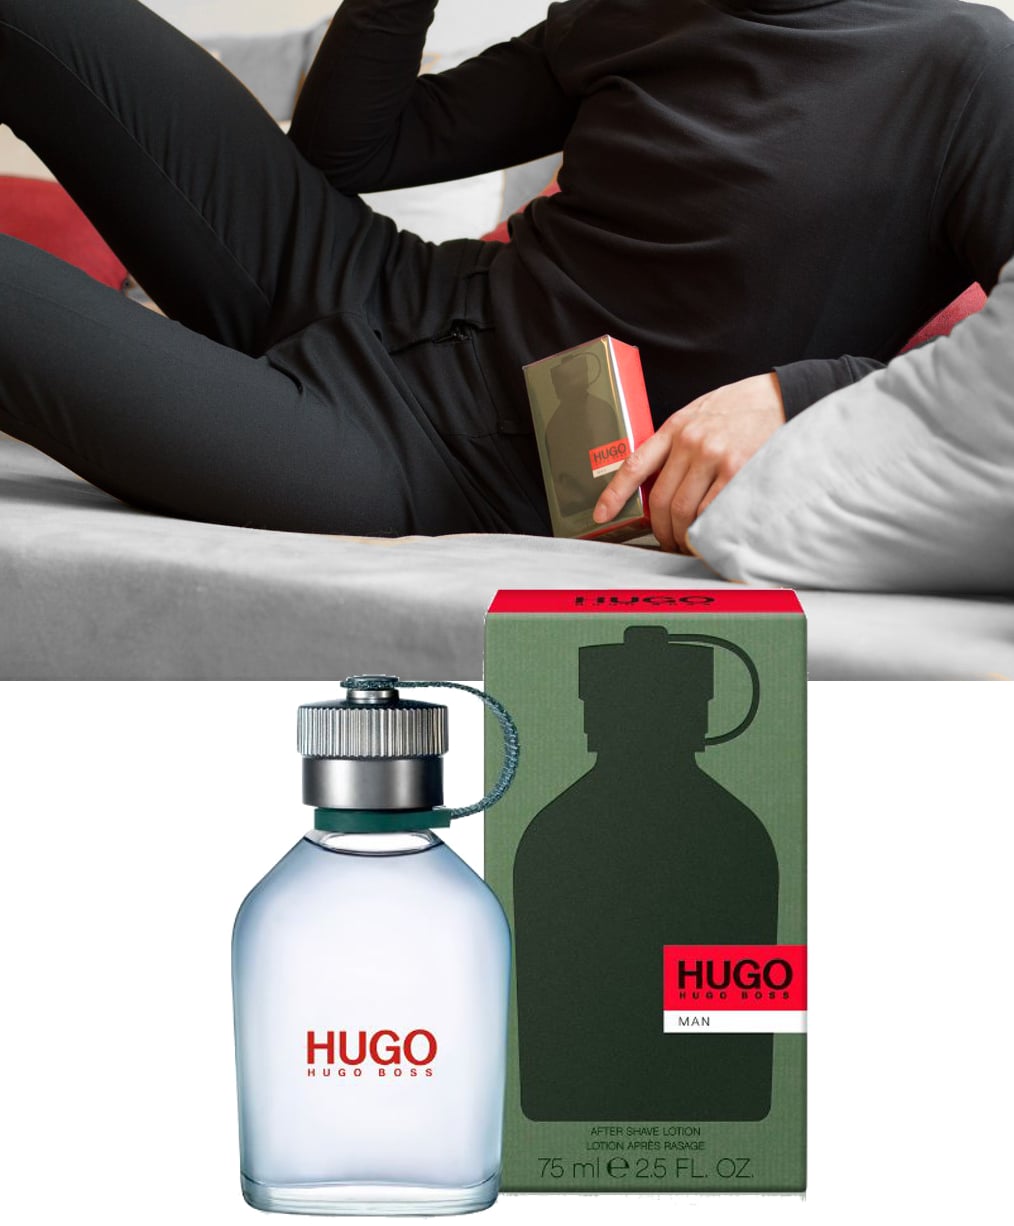 Hugo Boss Man Parfum - 2. Advent Gewinnspiel - Fashion Blog Für Männer - Hier und Heute das Hugo Boss Man Parfum gewinnen. Zum 2. Advent verlose ich ein Hugo Boss Man Parfum auf meinem Fashion Blog.